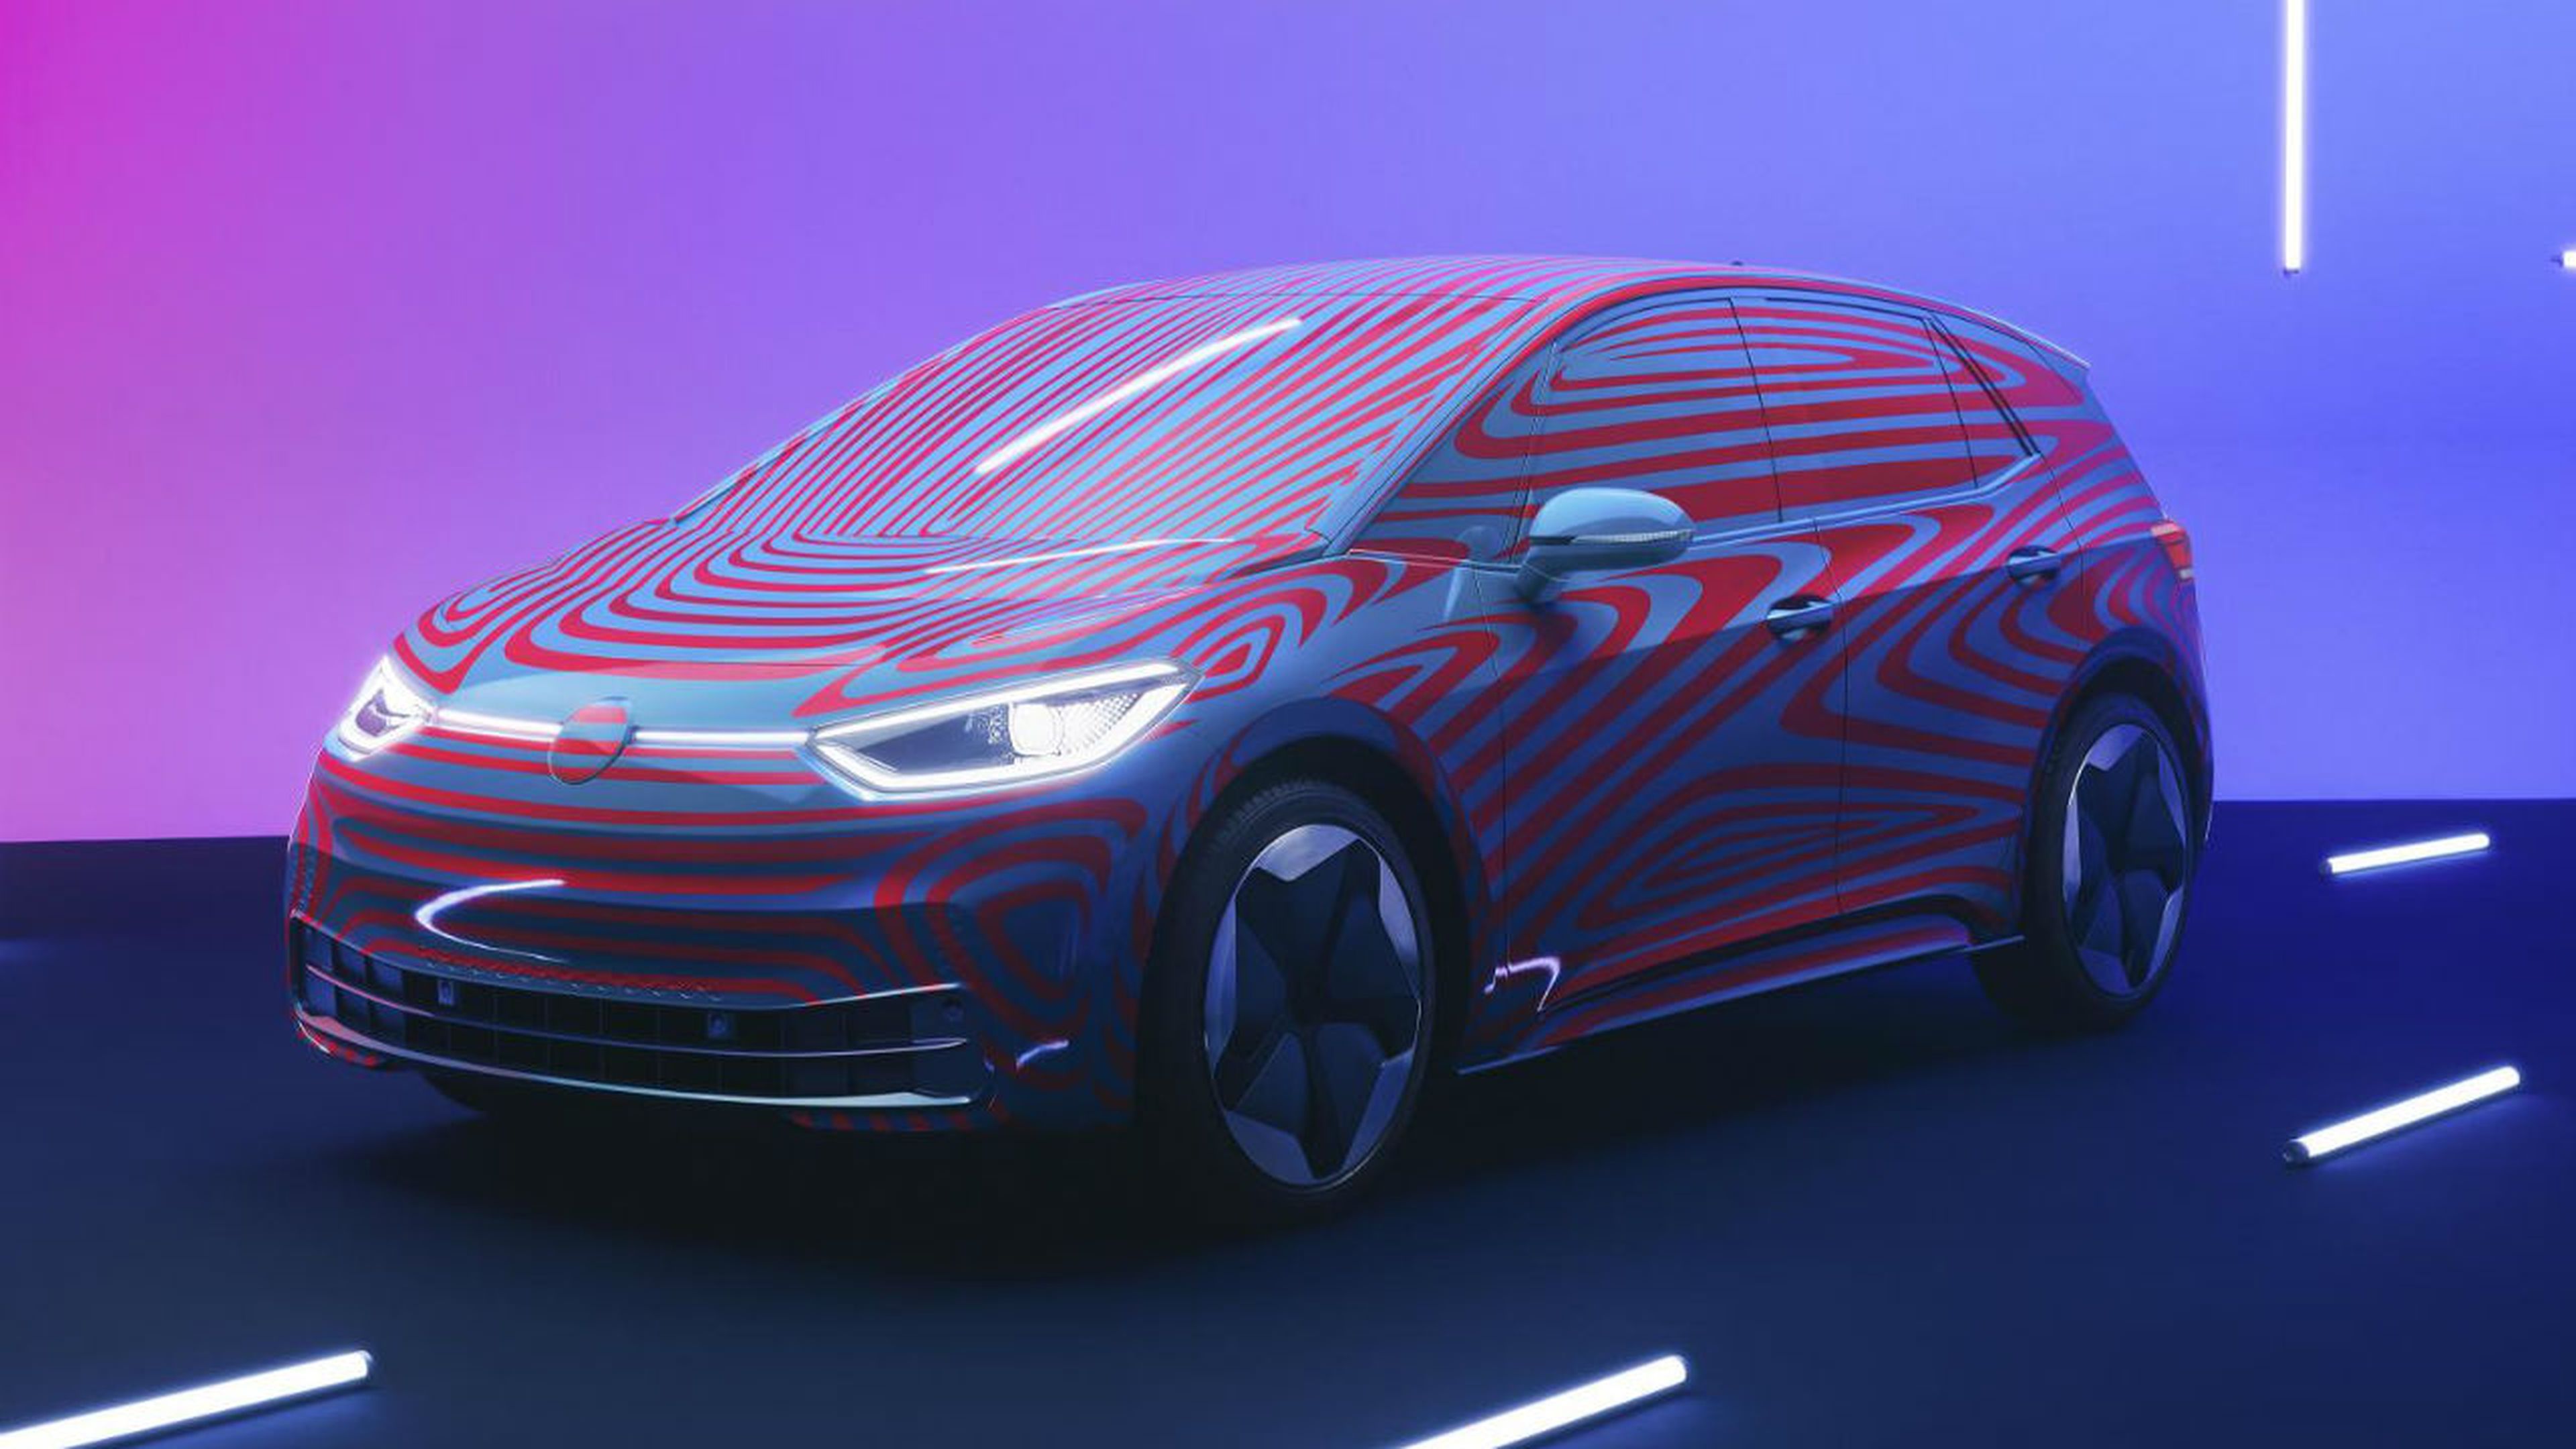 El Volkswagen ID.3 promete ser el modelo que popularice el coche eléctrico entre el gran público.